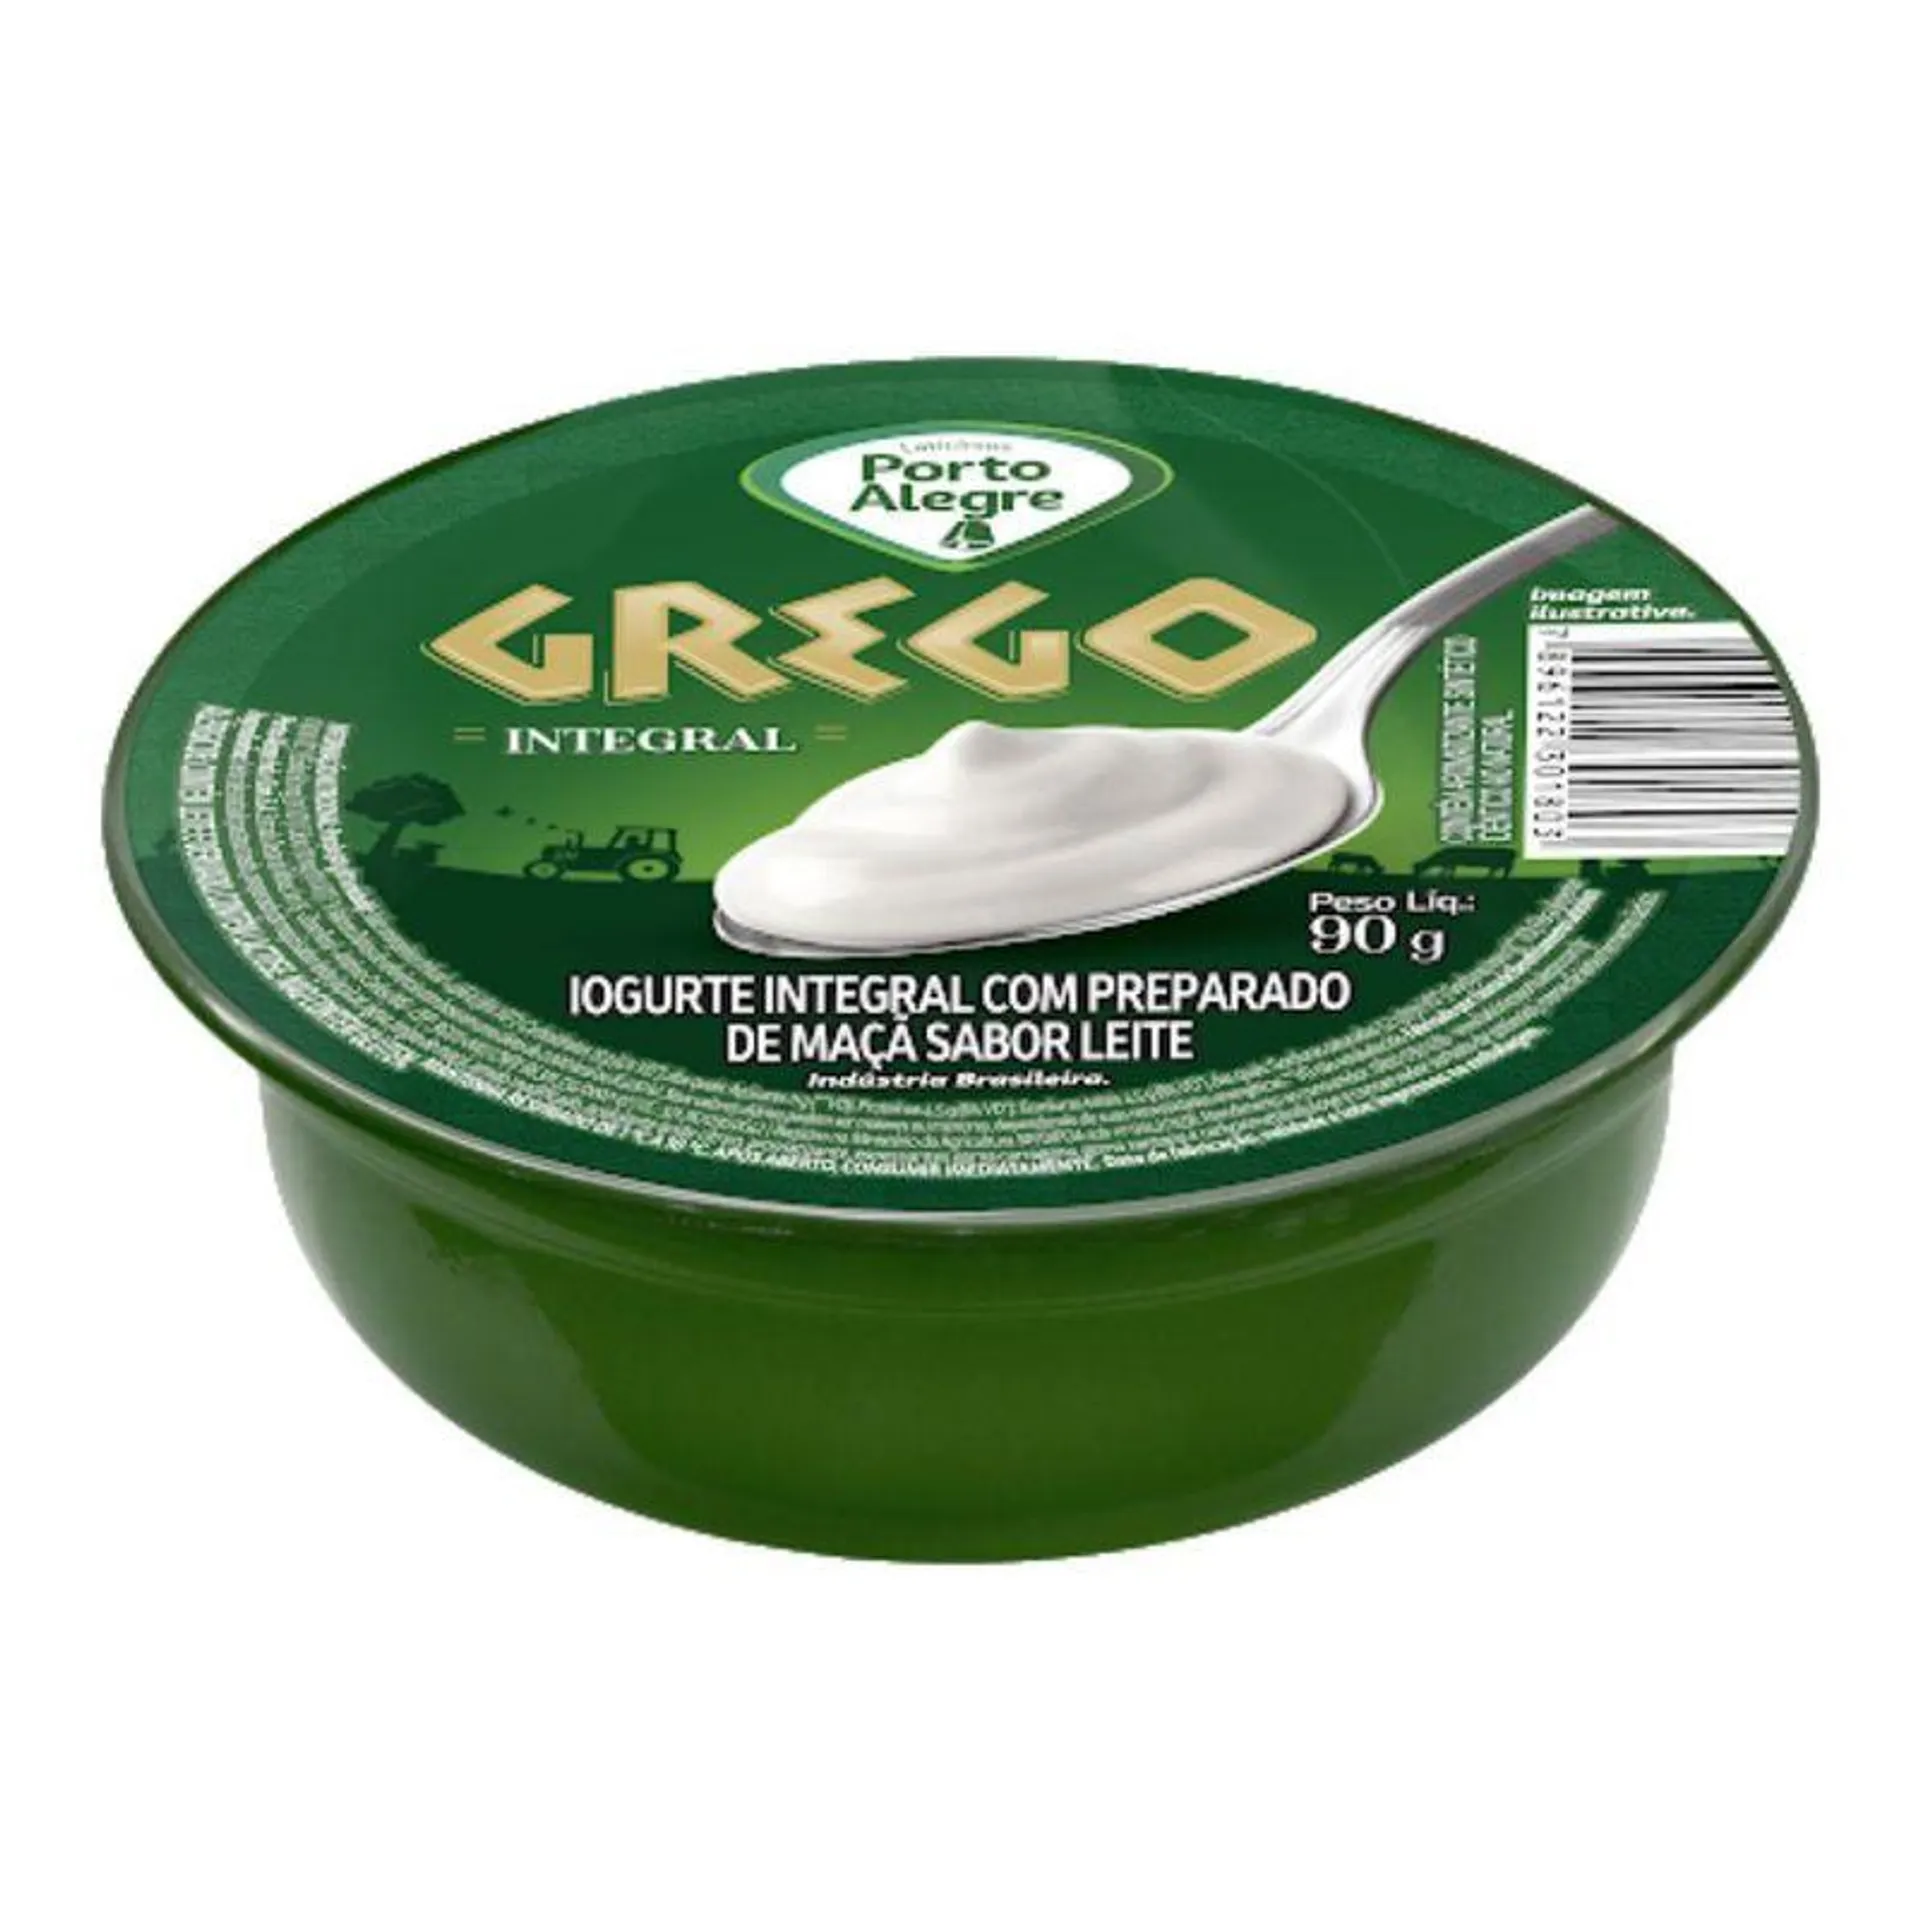 Iogurte Grego Porto Alegre Integral 90g